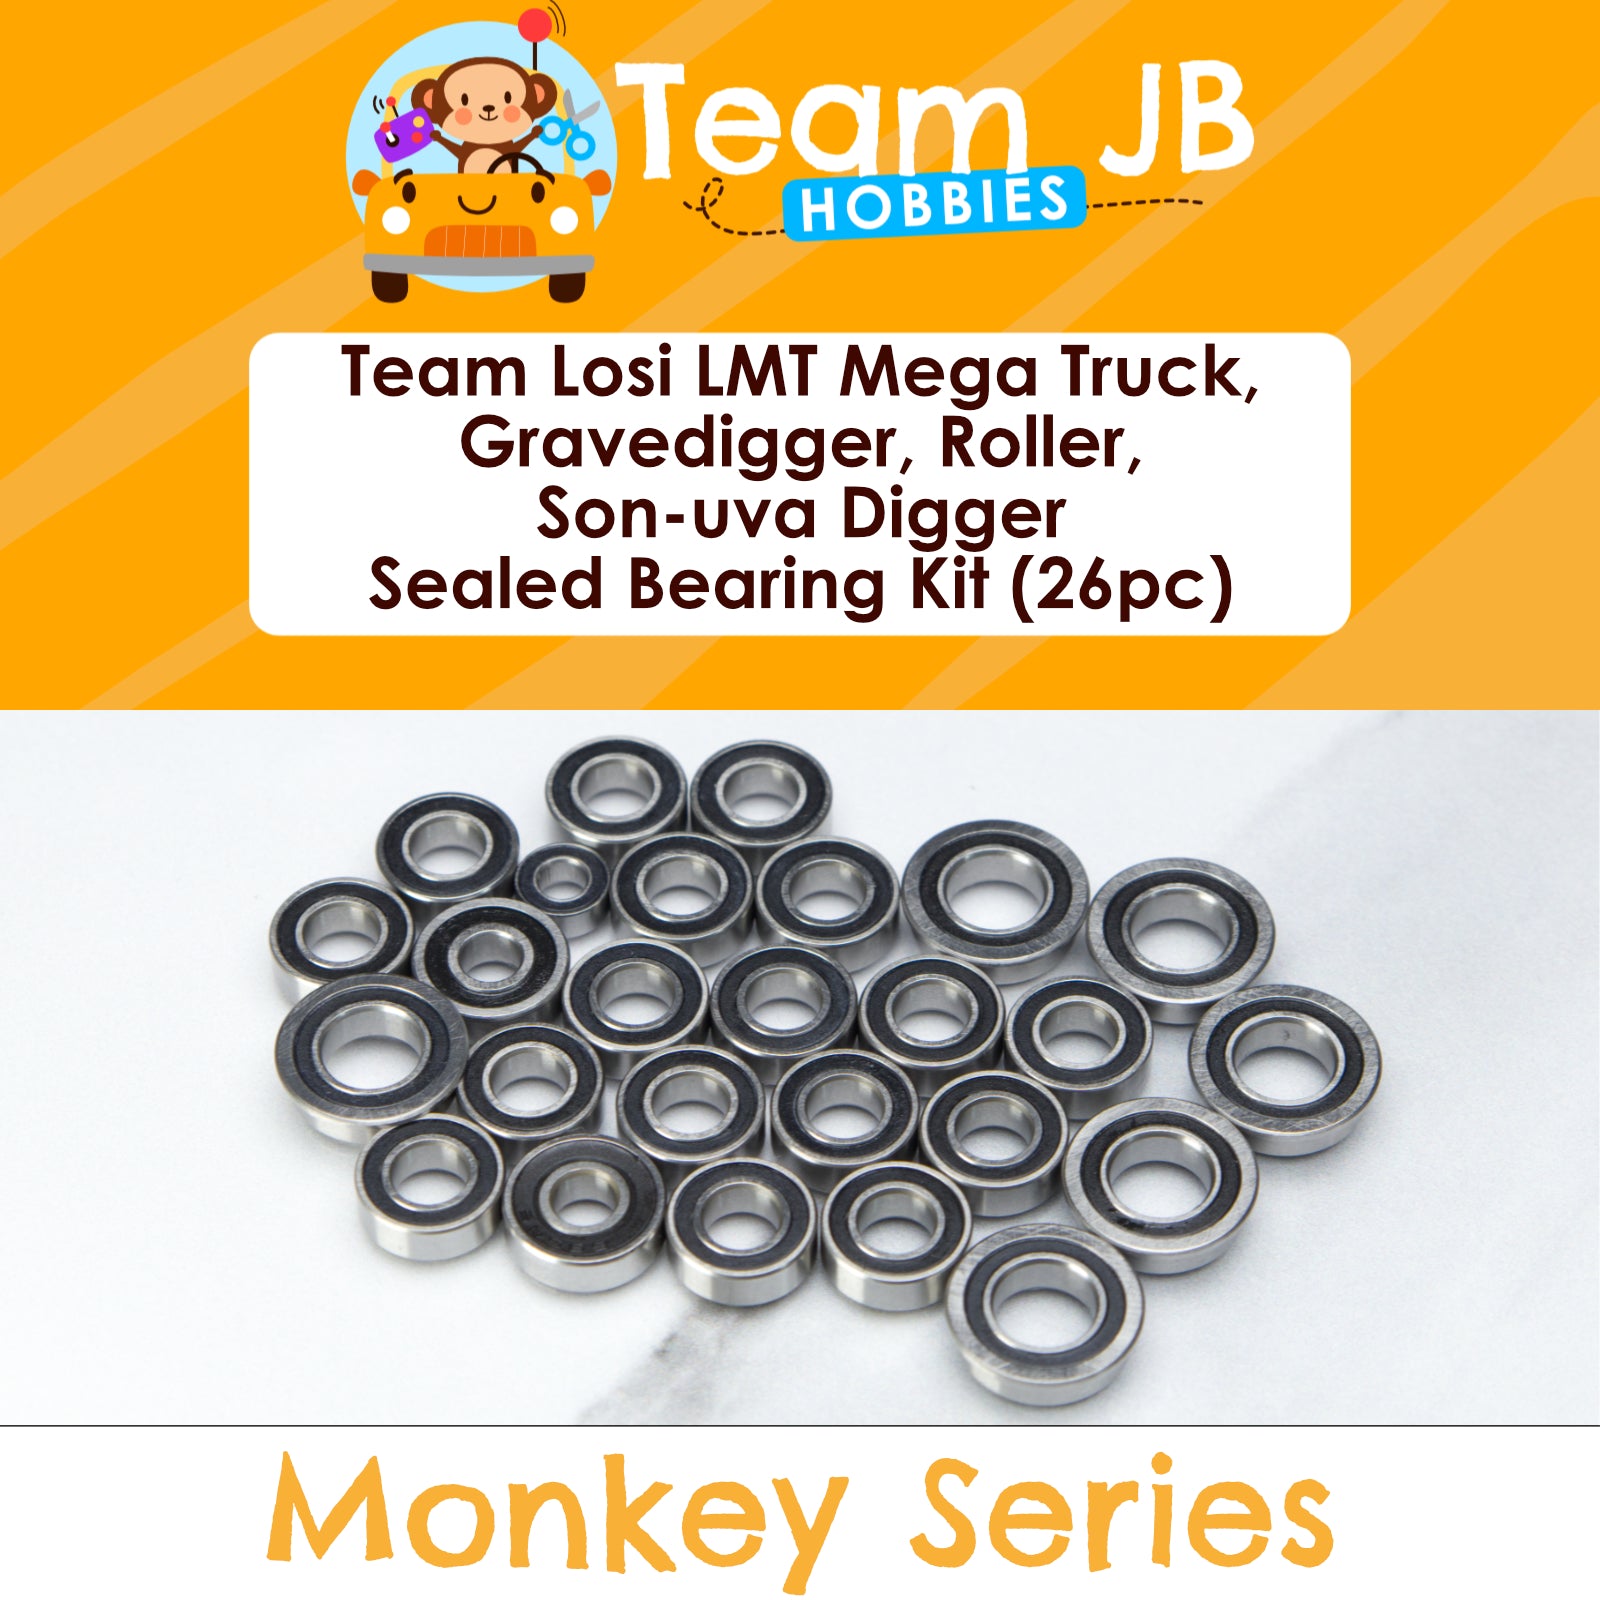 Team Losi LMT Mega Truck, Gravedigger, Roller, Son-uva Digger - Sealed Bearing Kit